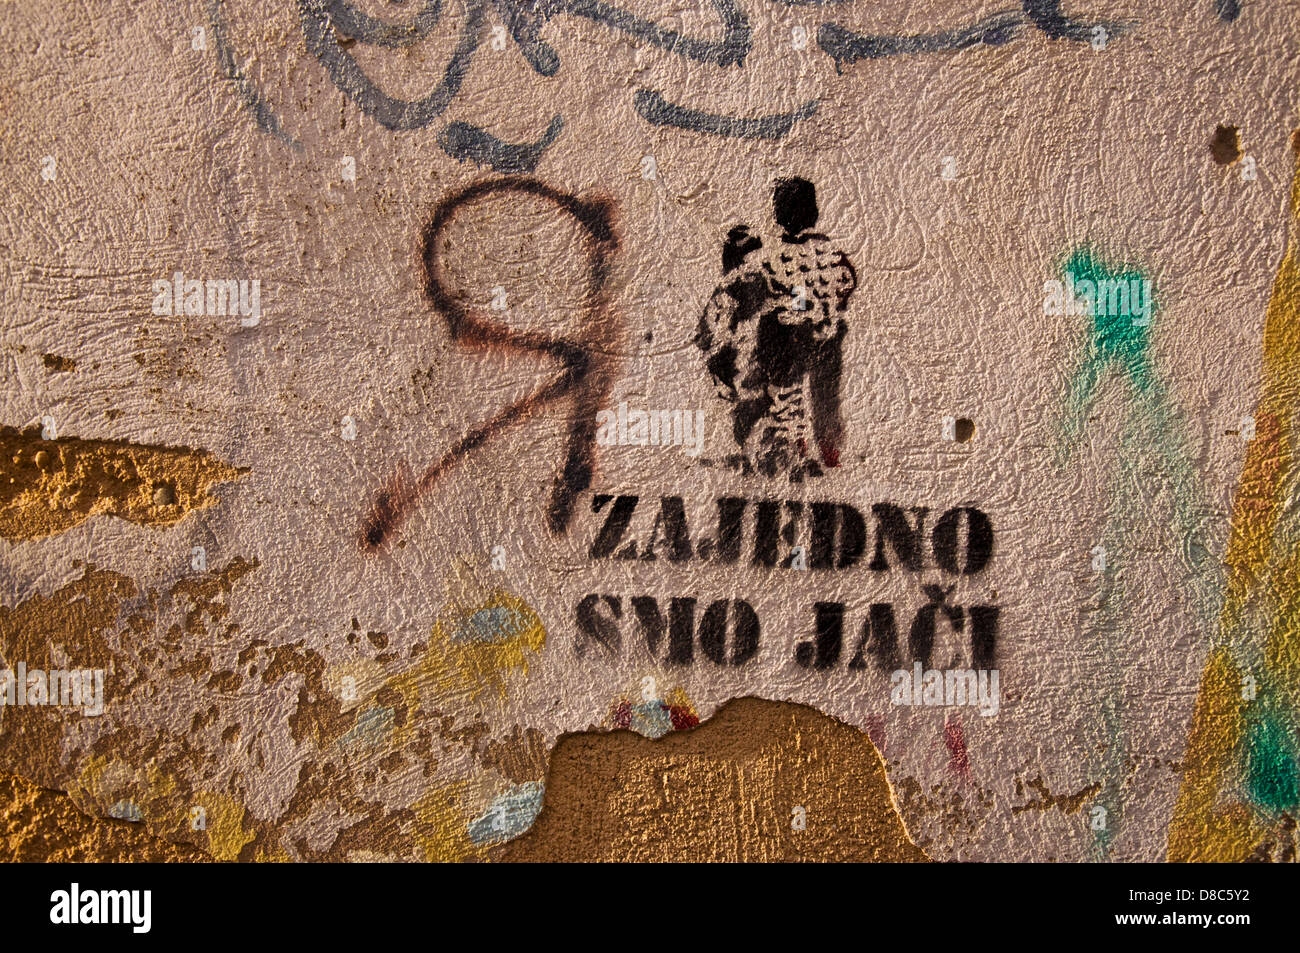 Graffiti in sagen Zajedno Smo Jaci Bedeutung zusammen wir sind stärker von Vereinigung der ethnisch geteilten bosnischen Stadt Mostar Stockfoto